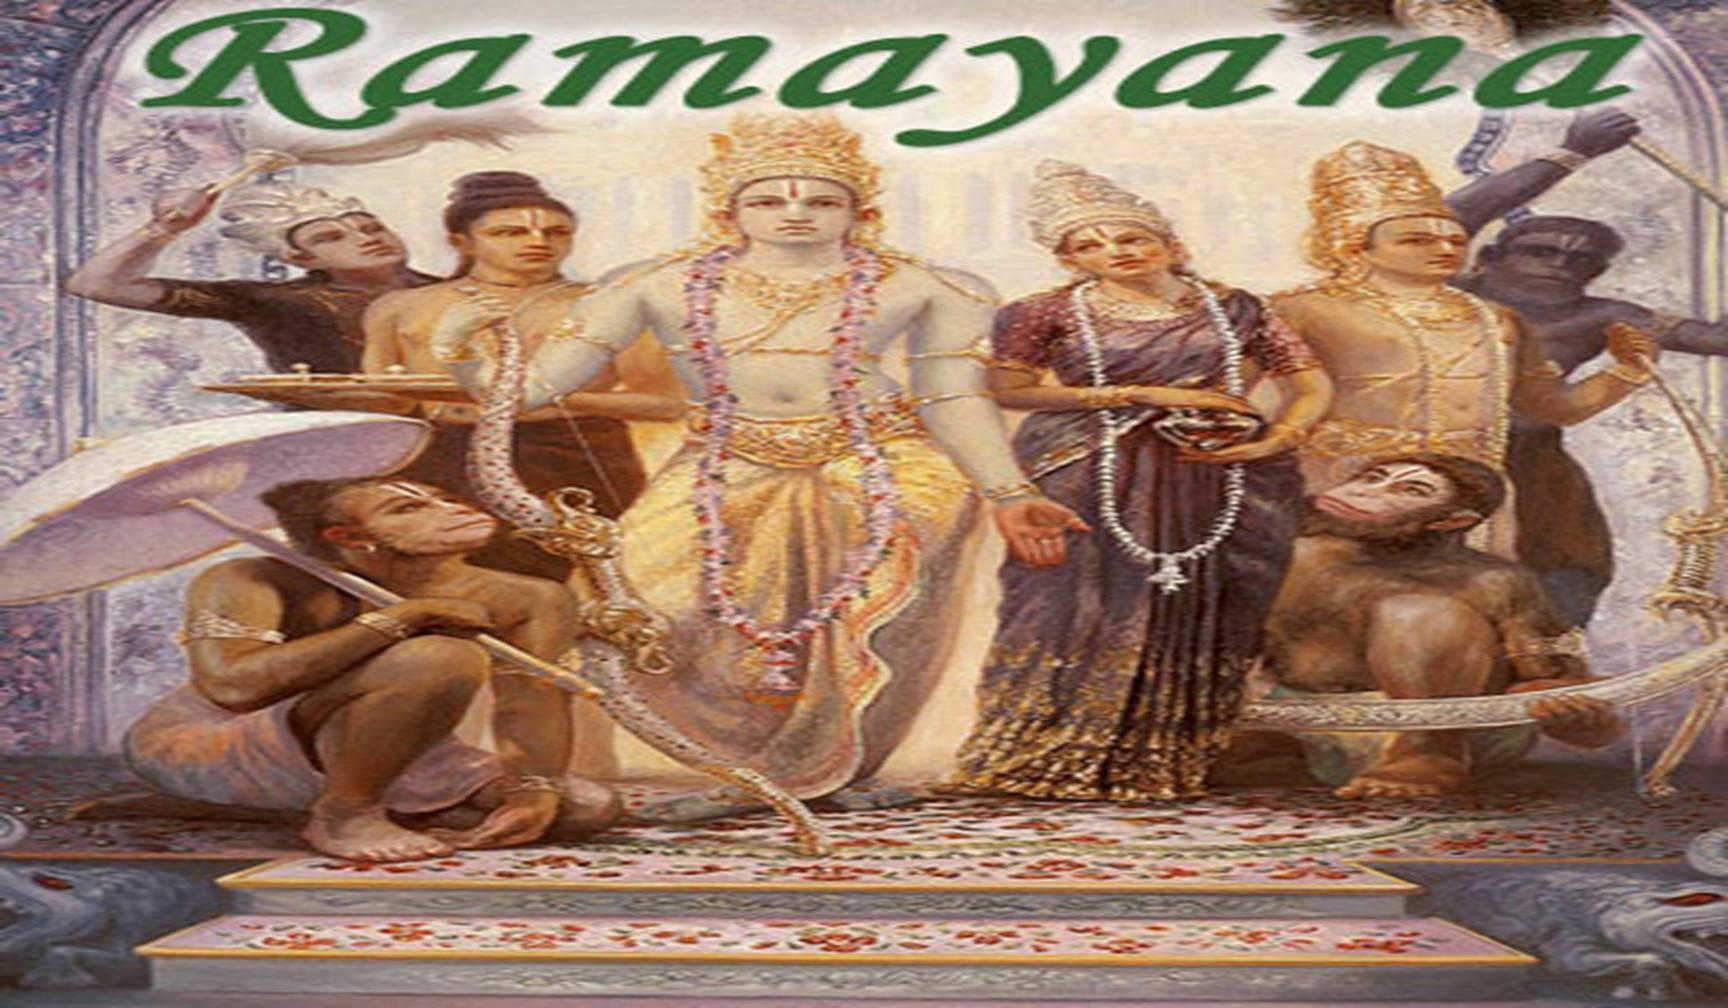 रामायण की कुछ अनसुनी बातें जो शायद आप नहीं जानते